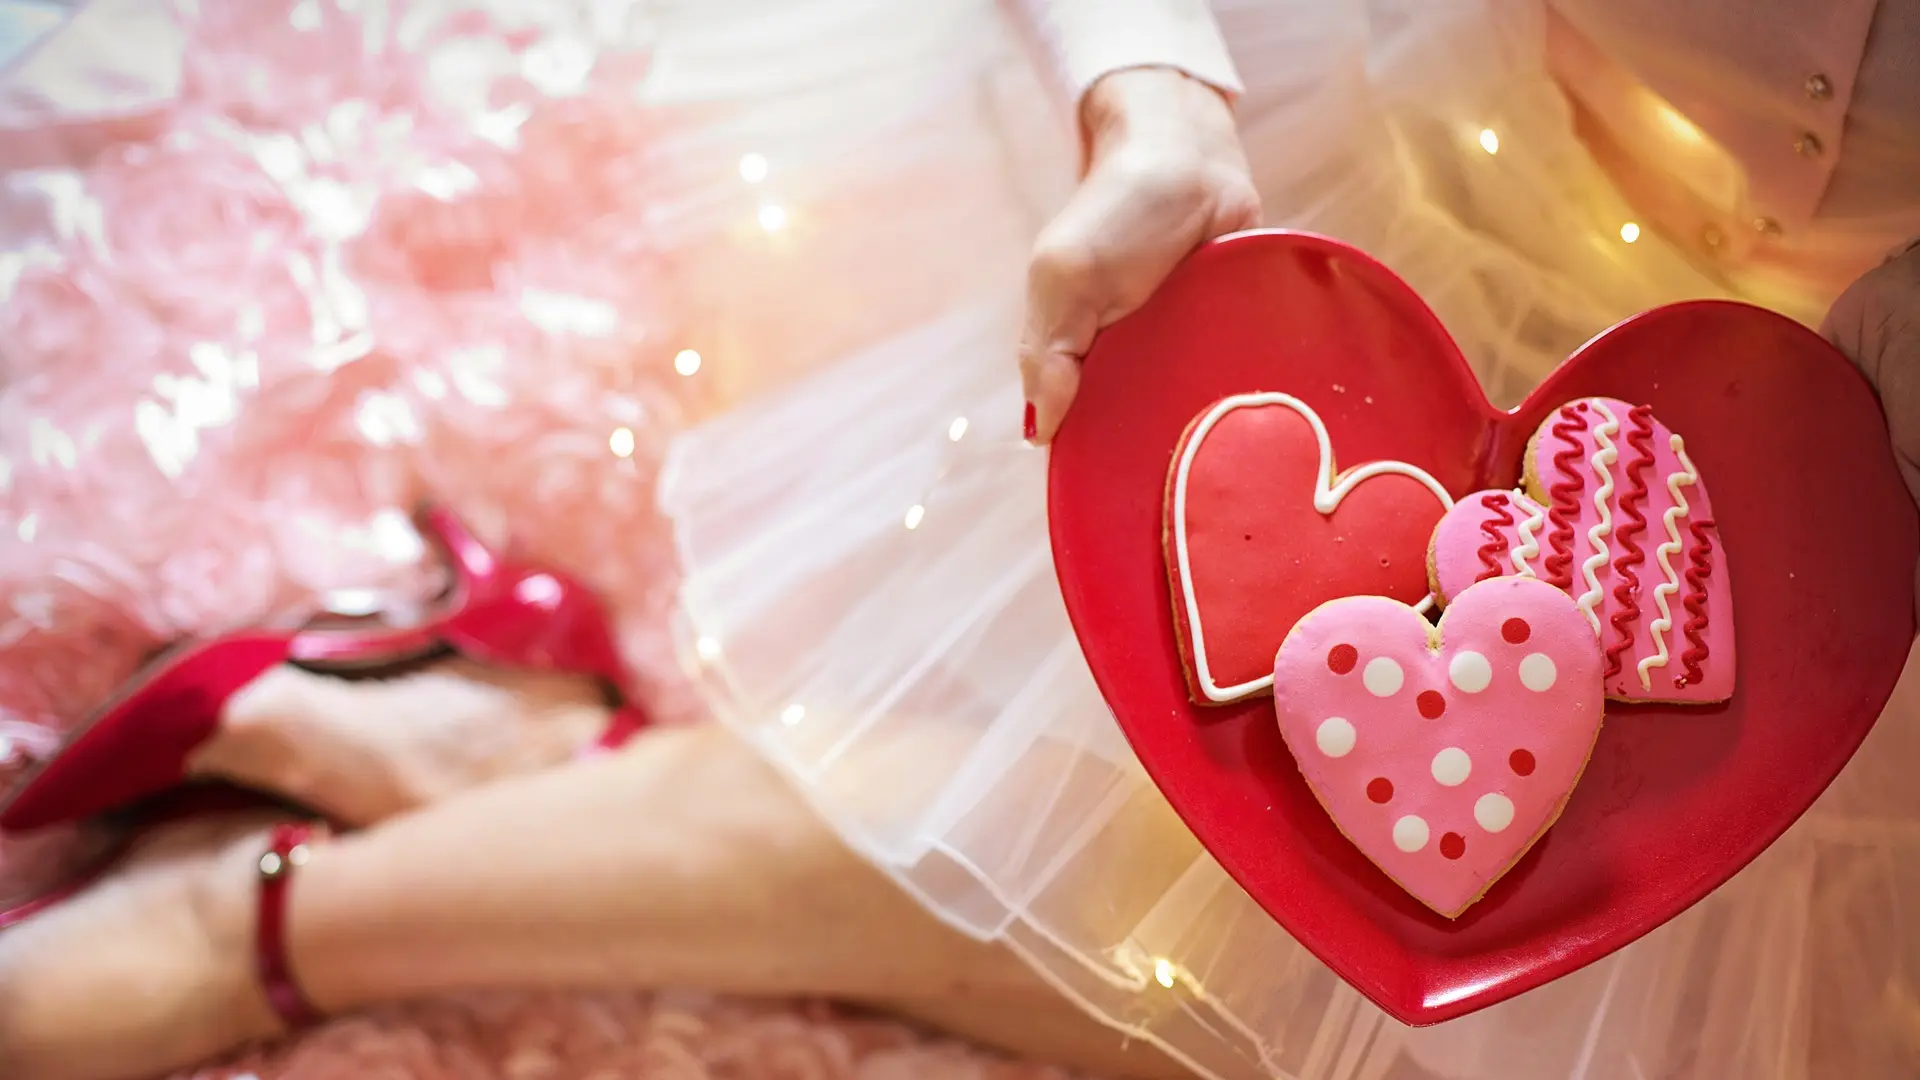 dan zaljubljenih,ljuba, zavođenje, srce, pixabay-65c9162a888ce.webp